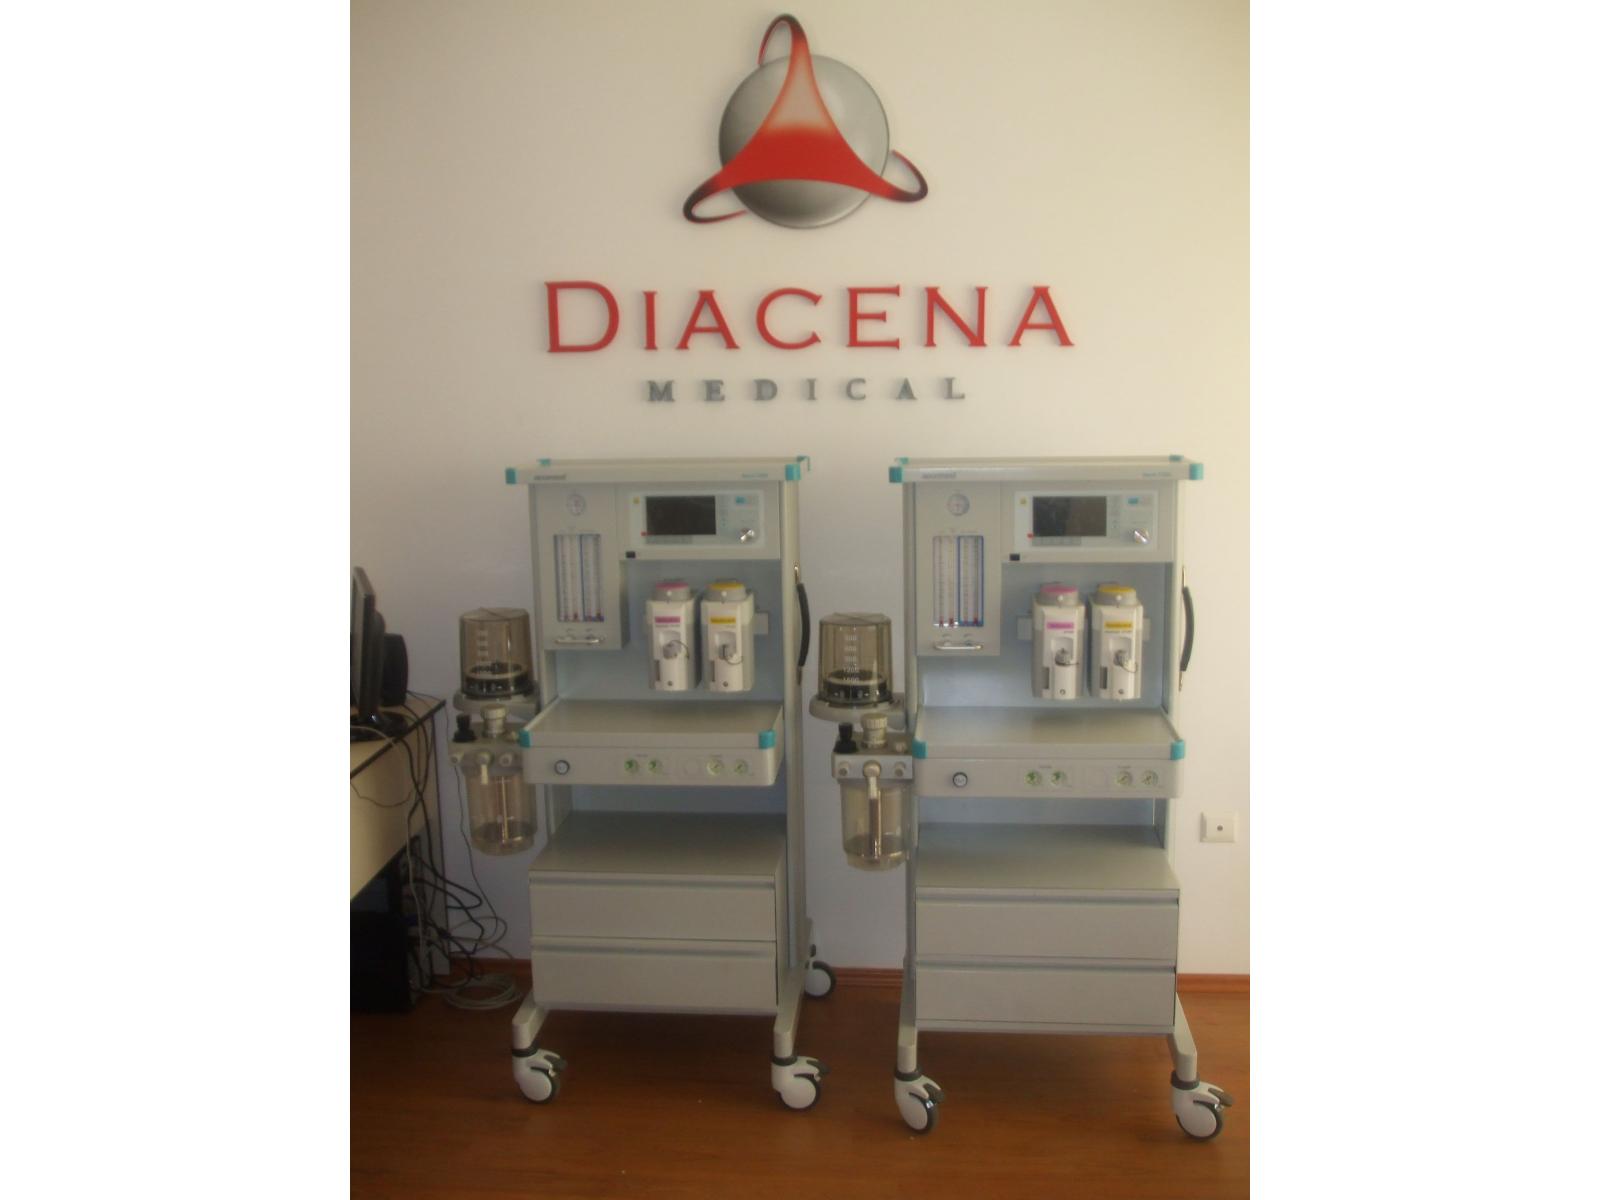 Diacena Medical - DSCF8607.JPG